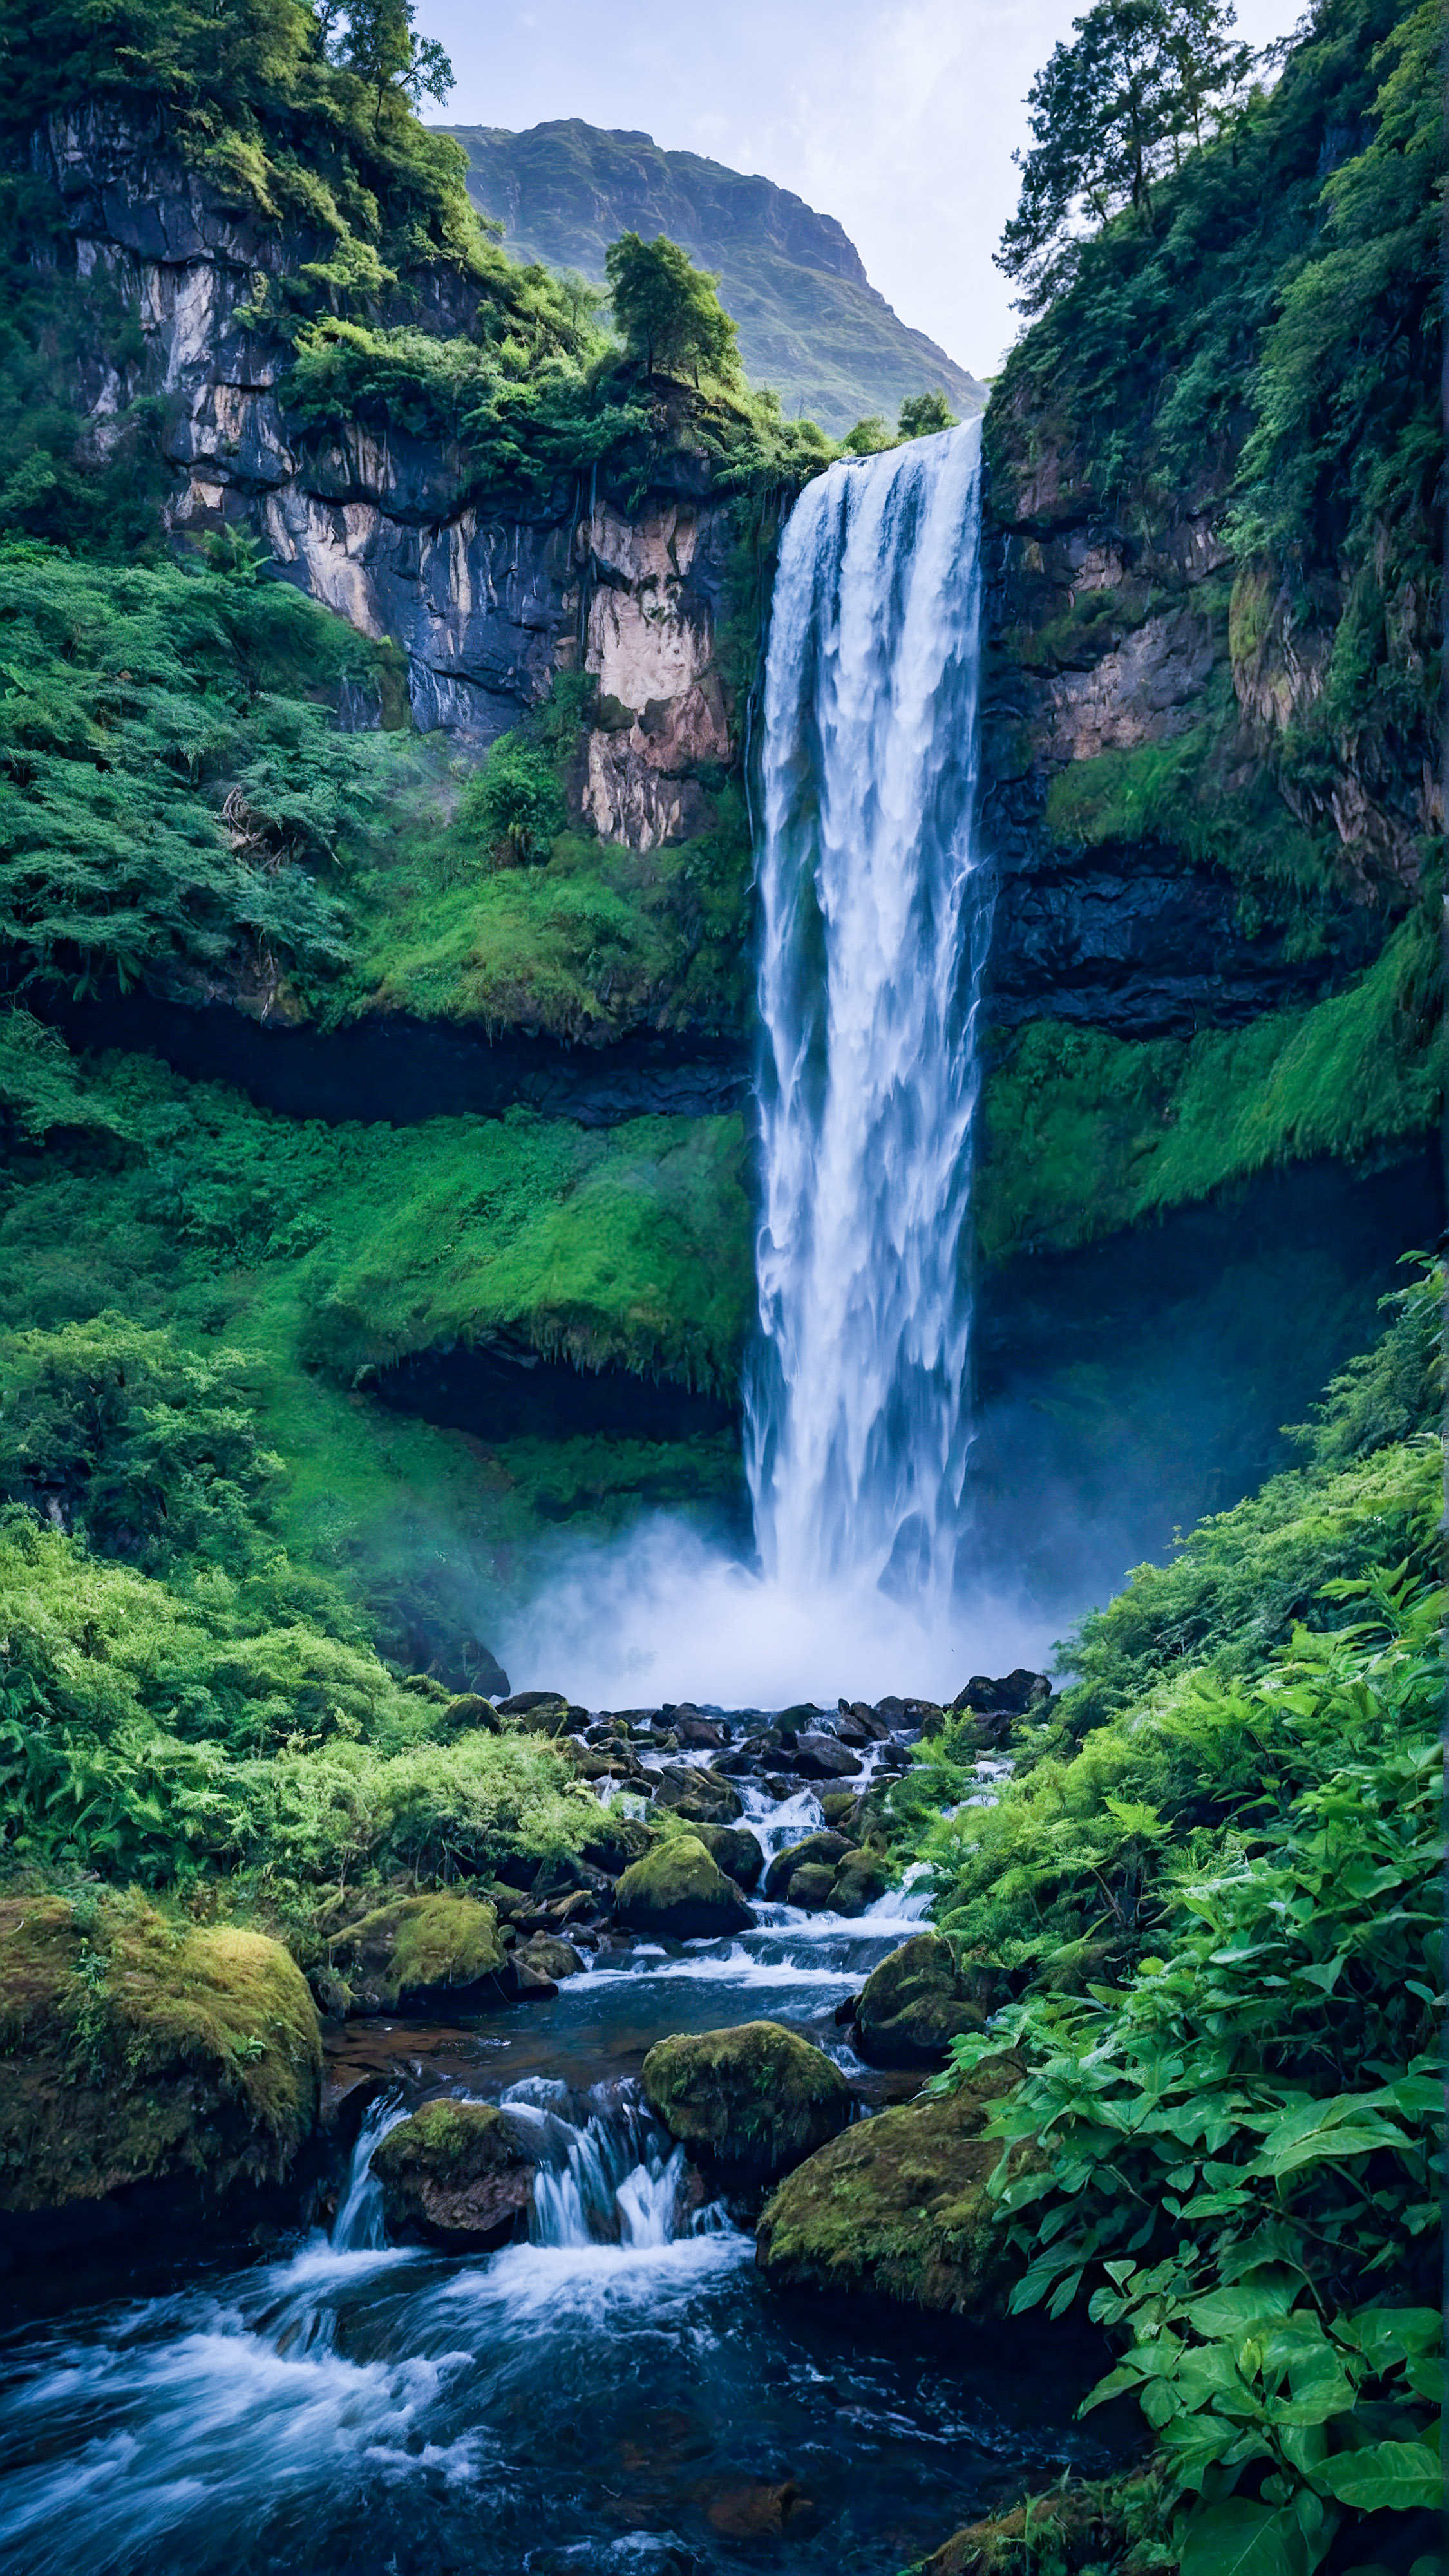 Découvrez la majesté de la nature avec notre meilleur fond d'écran style pour iPhone, représentant une cascade majestueuse dévalant une montagne, entourée de verdure luxuriante.